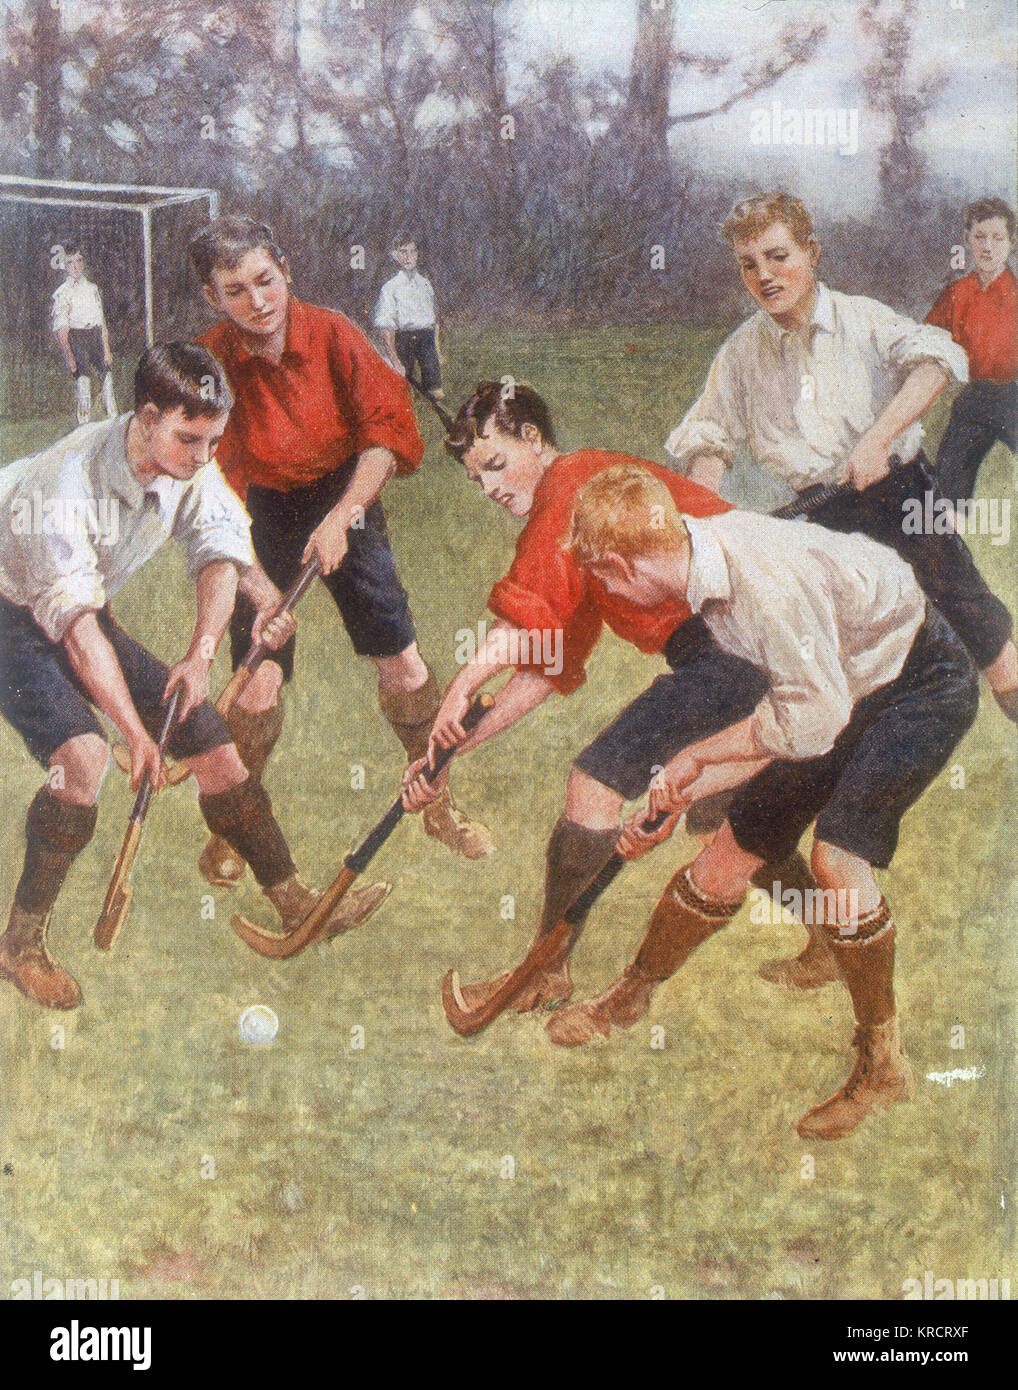 Un ragazzo gioco di hockey data: 1908 Foto Stock